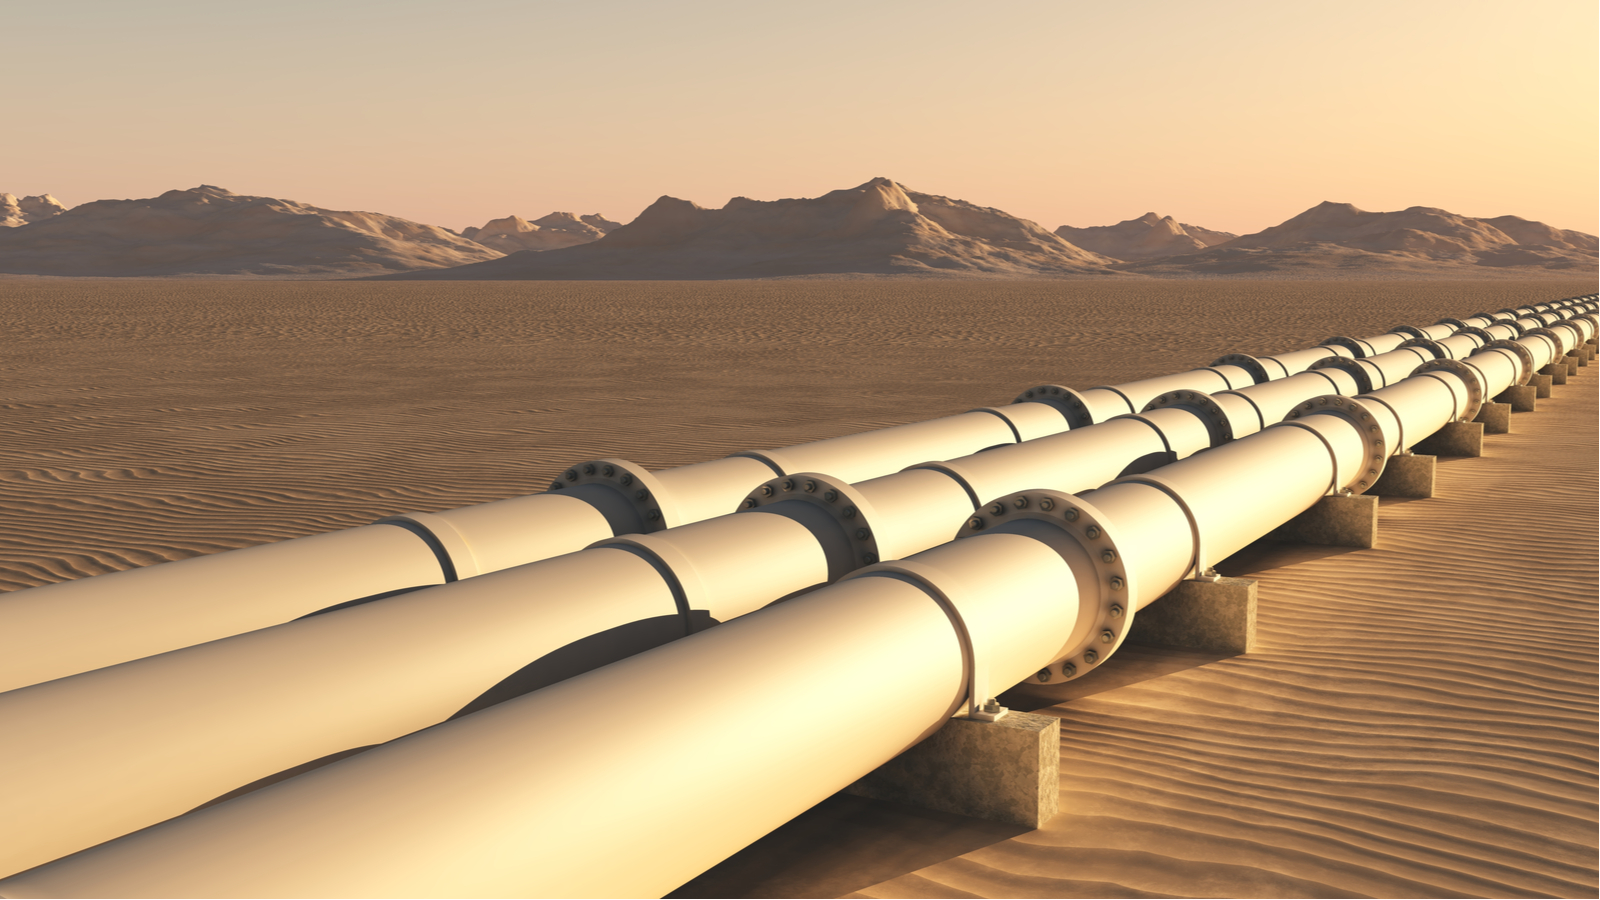 Pipelines in the desert